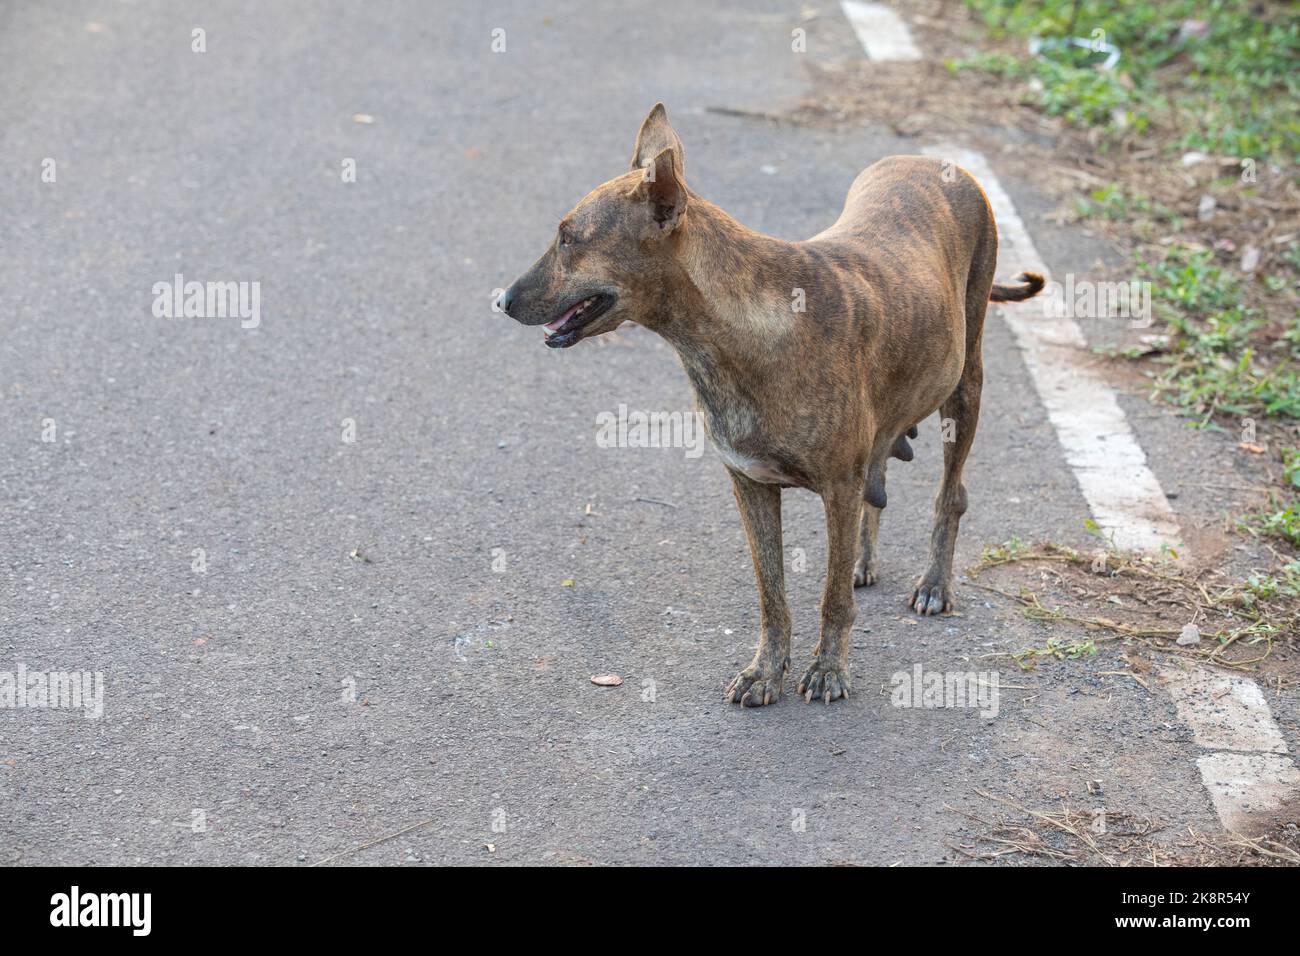 Der indische Pariah-Hund, auch bekannt als der indische einheimische Hund. Stockfoto